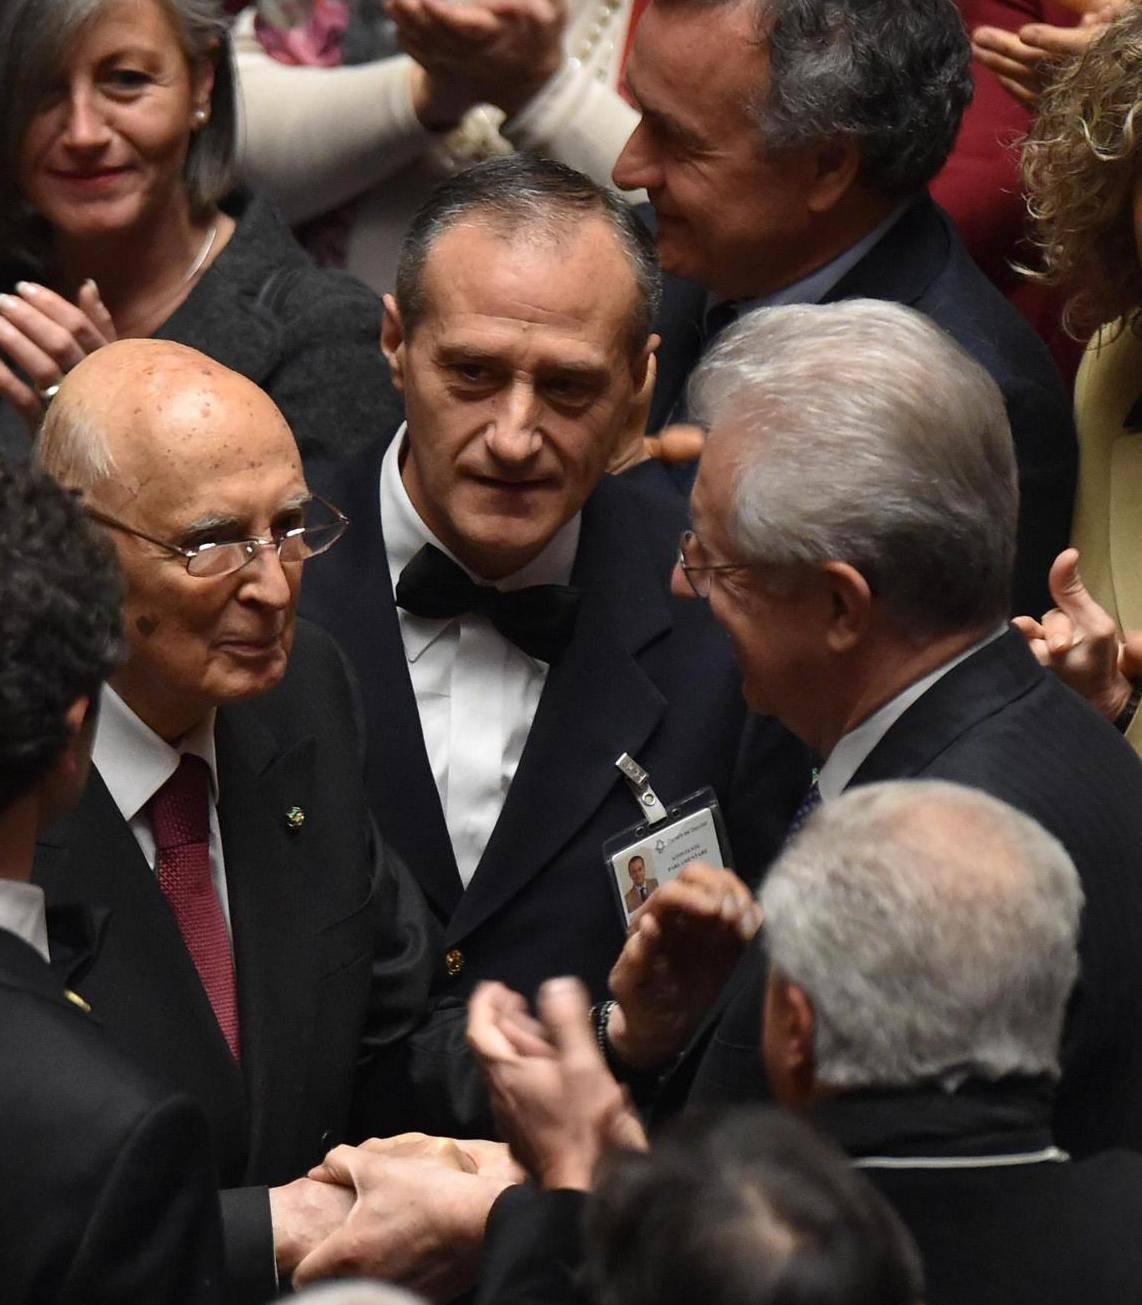 Napolitano e Monti: nuova vita da colleghi tra selfie e abbracci